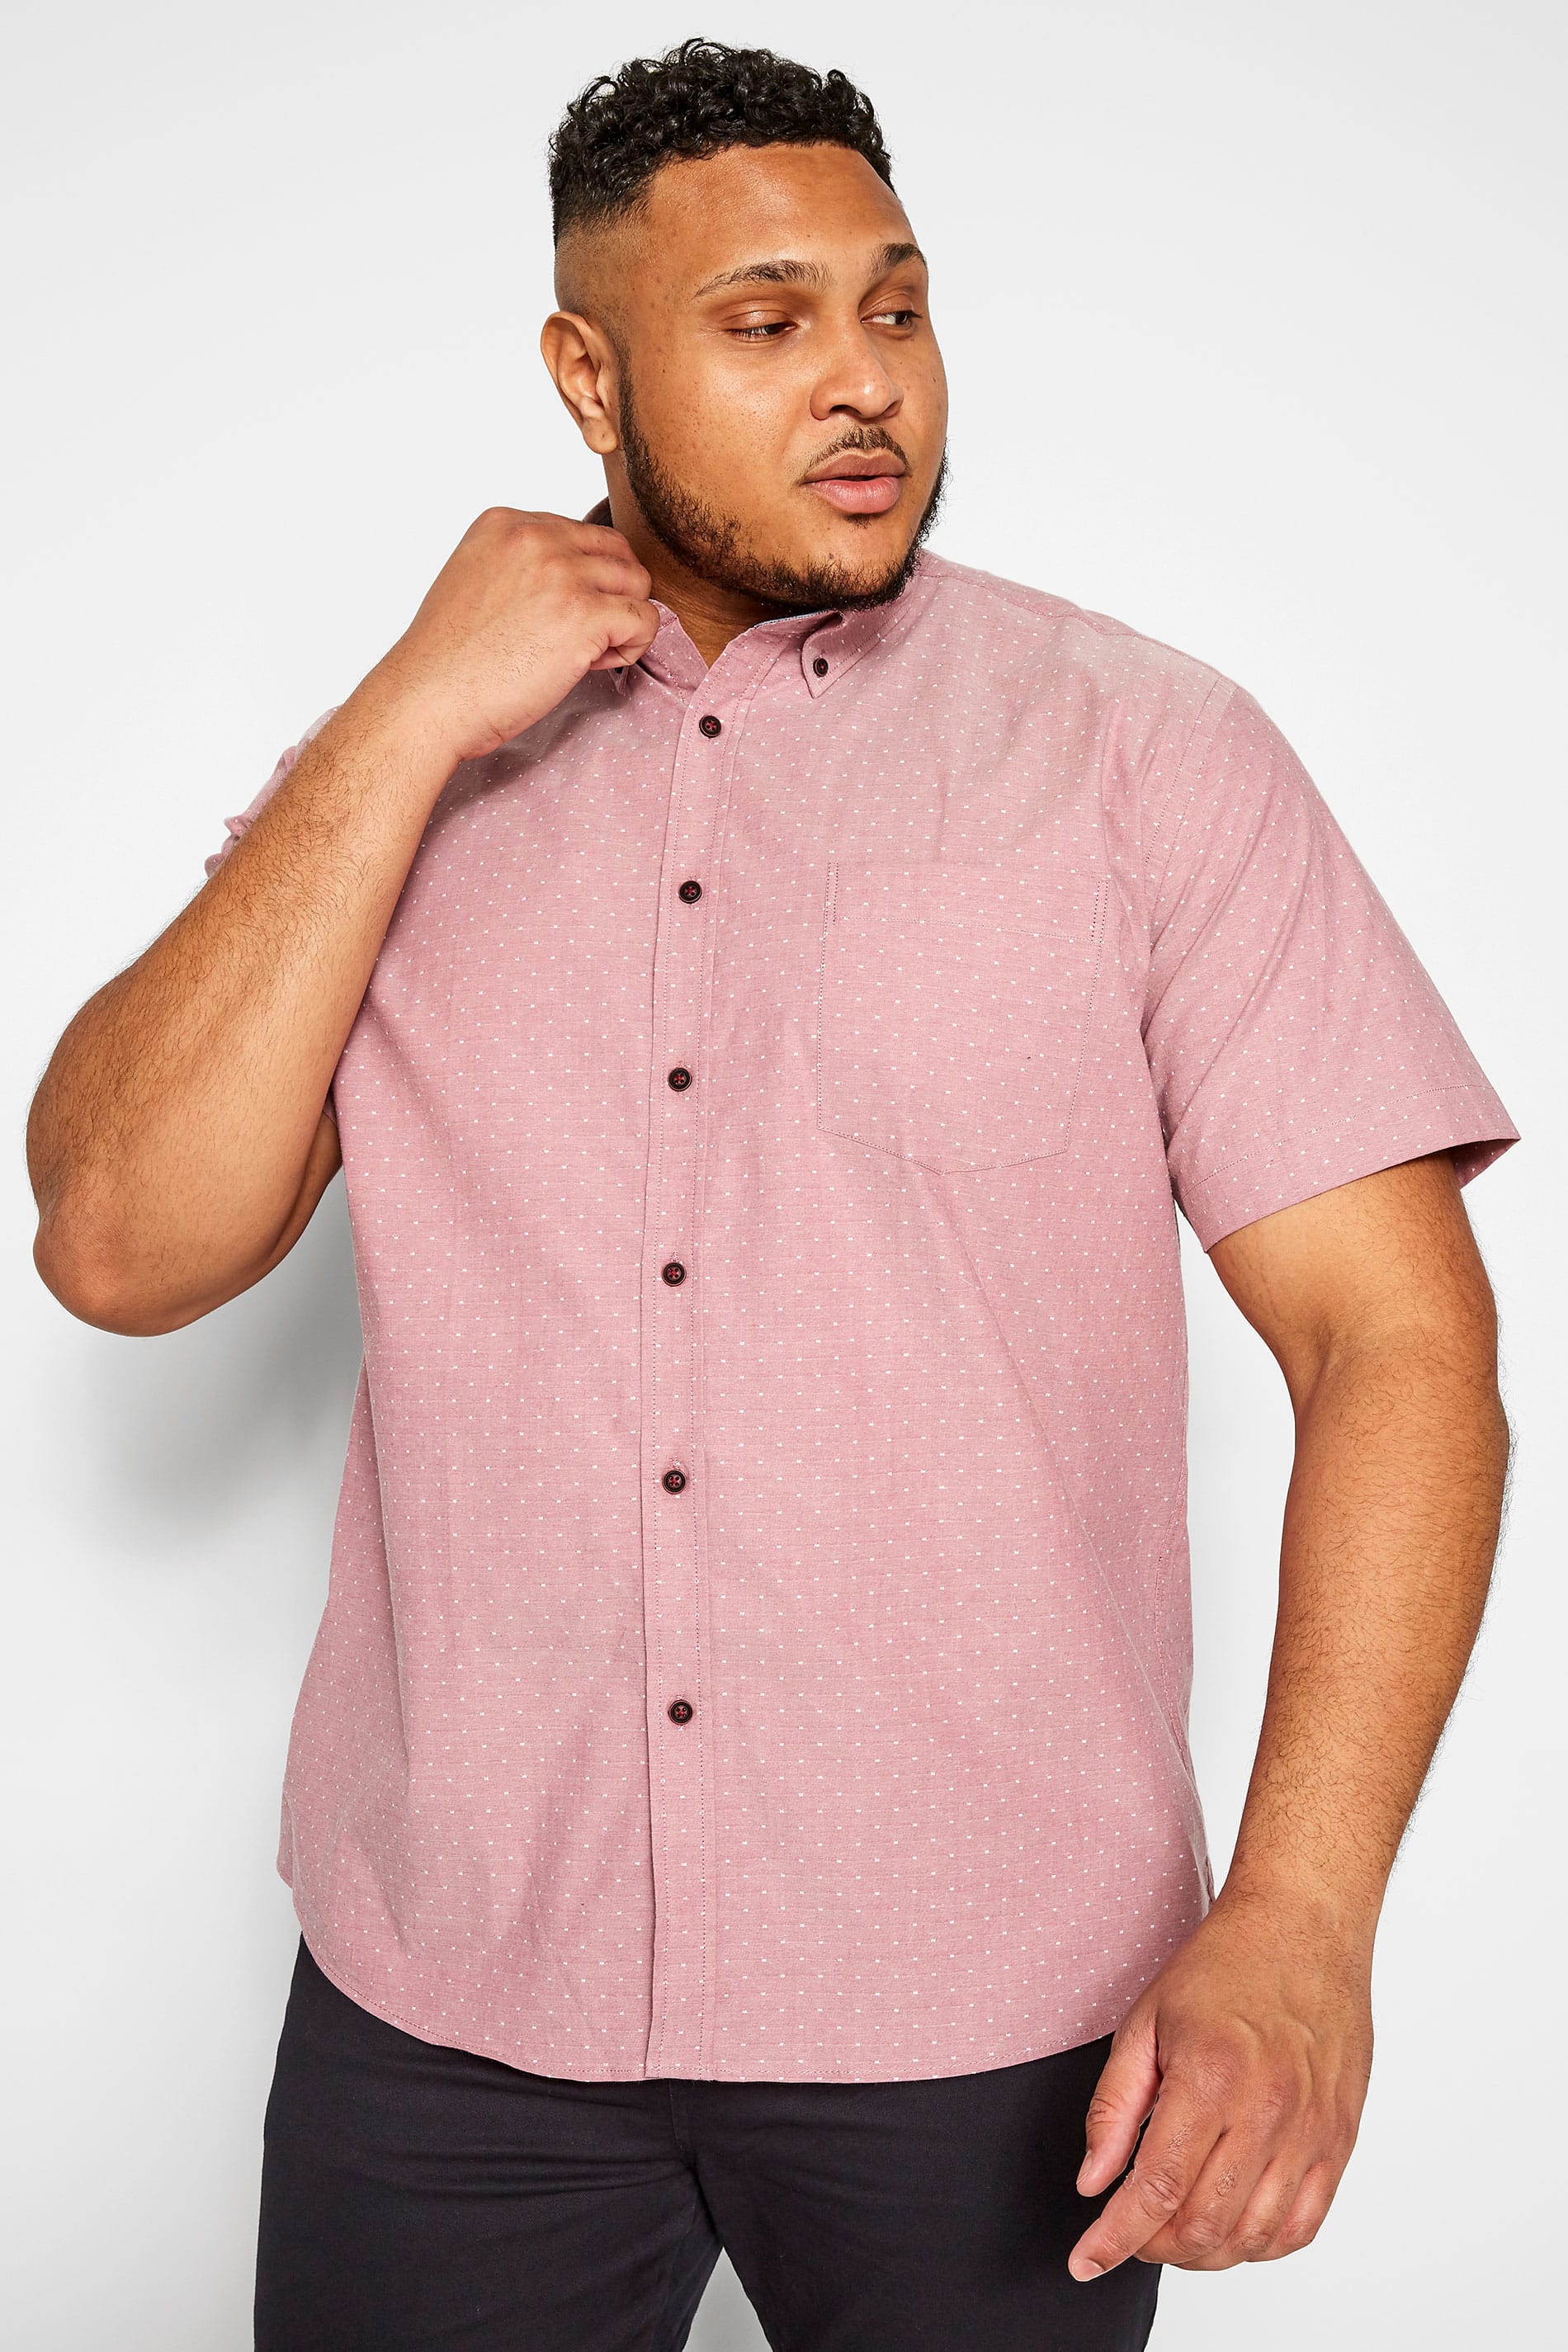 KAM Pink Printed Premium Shirt_235b.jpg